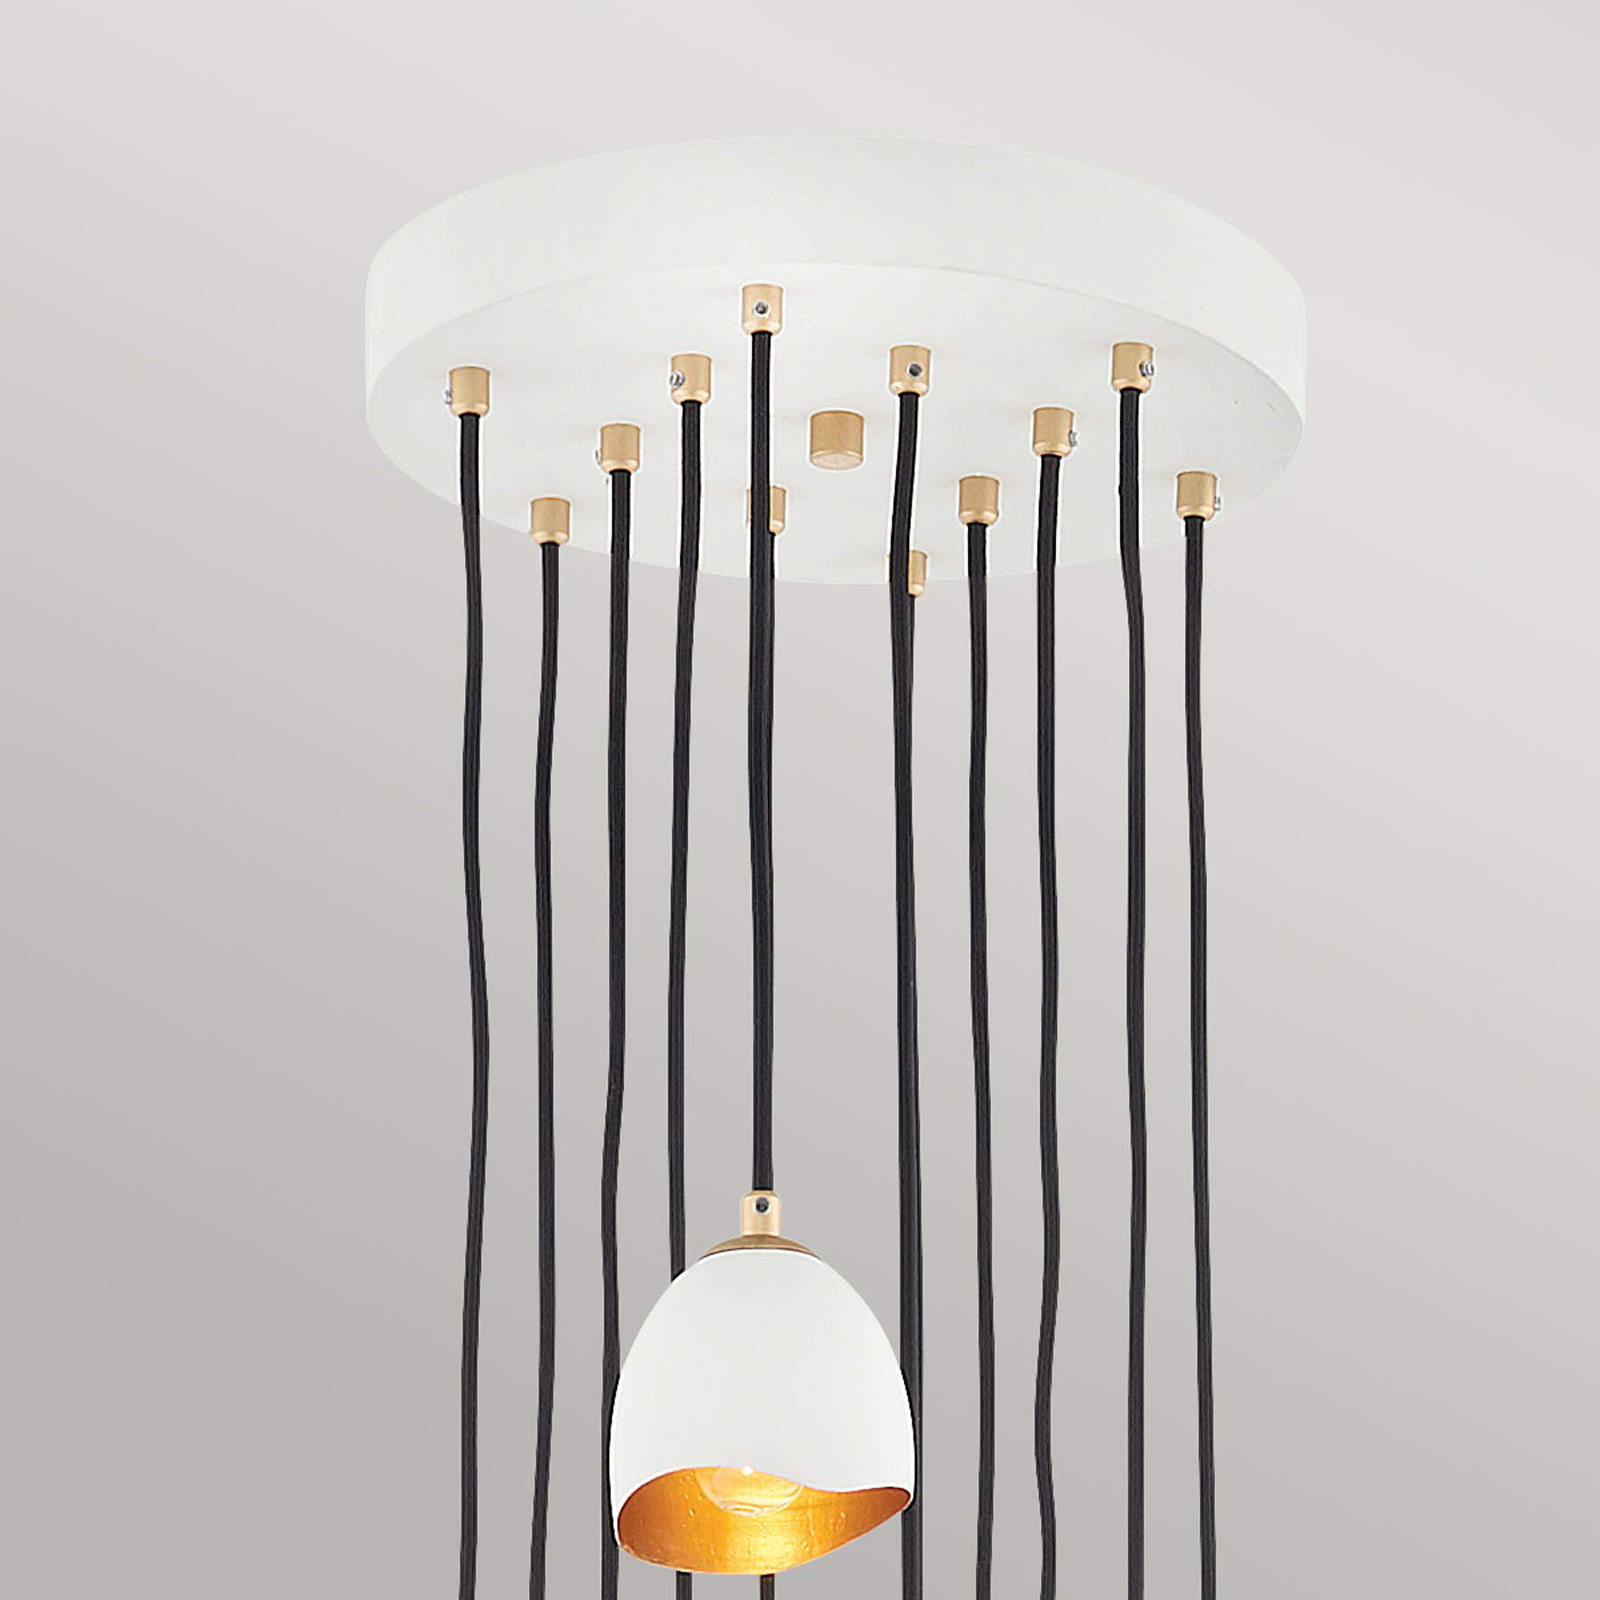 Nula hanglamp, schelp wit/goud, 12-lamps